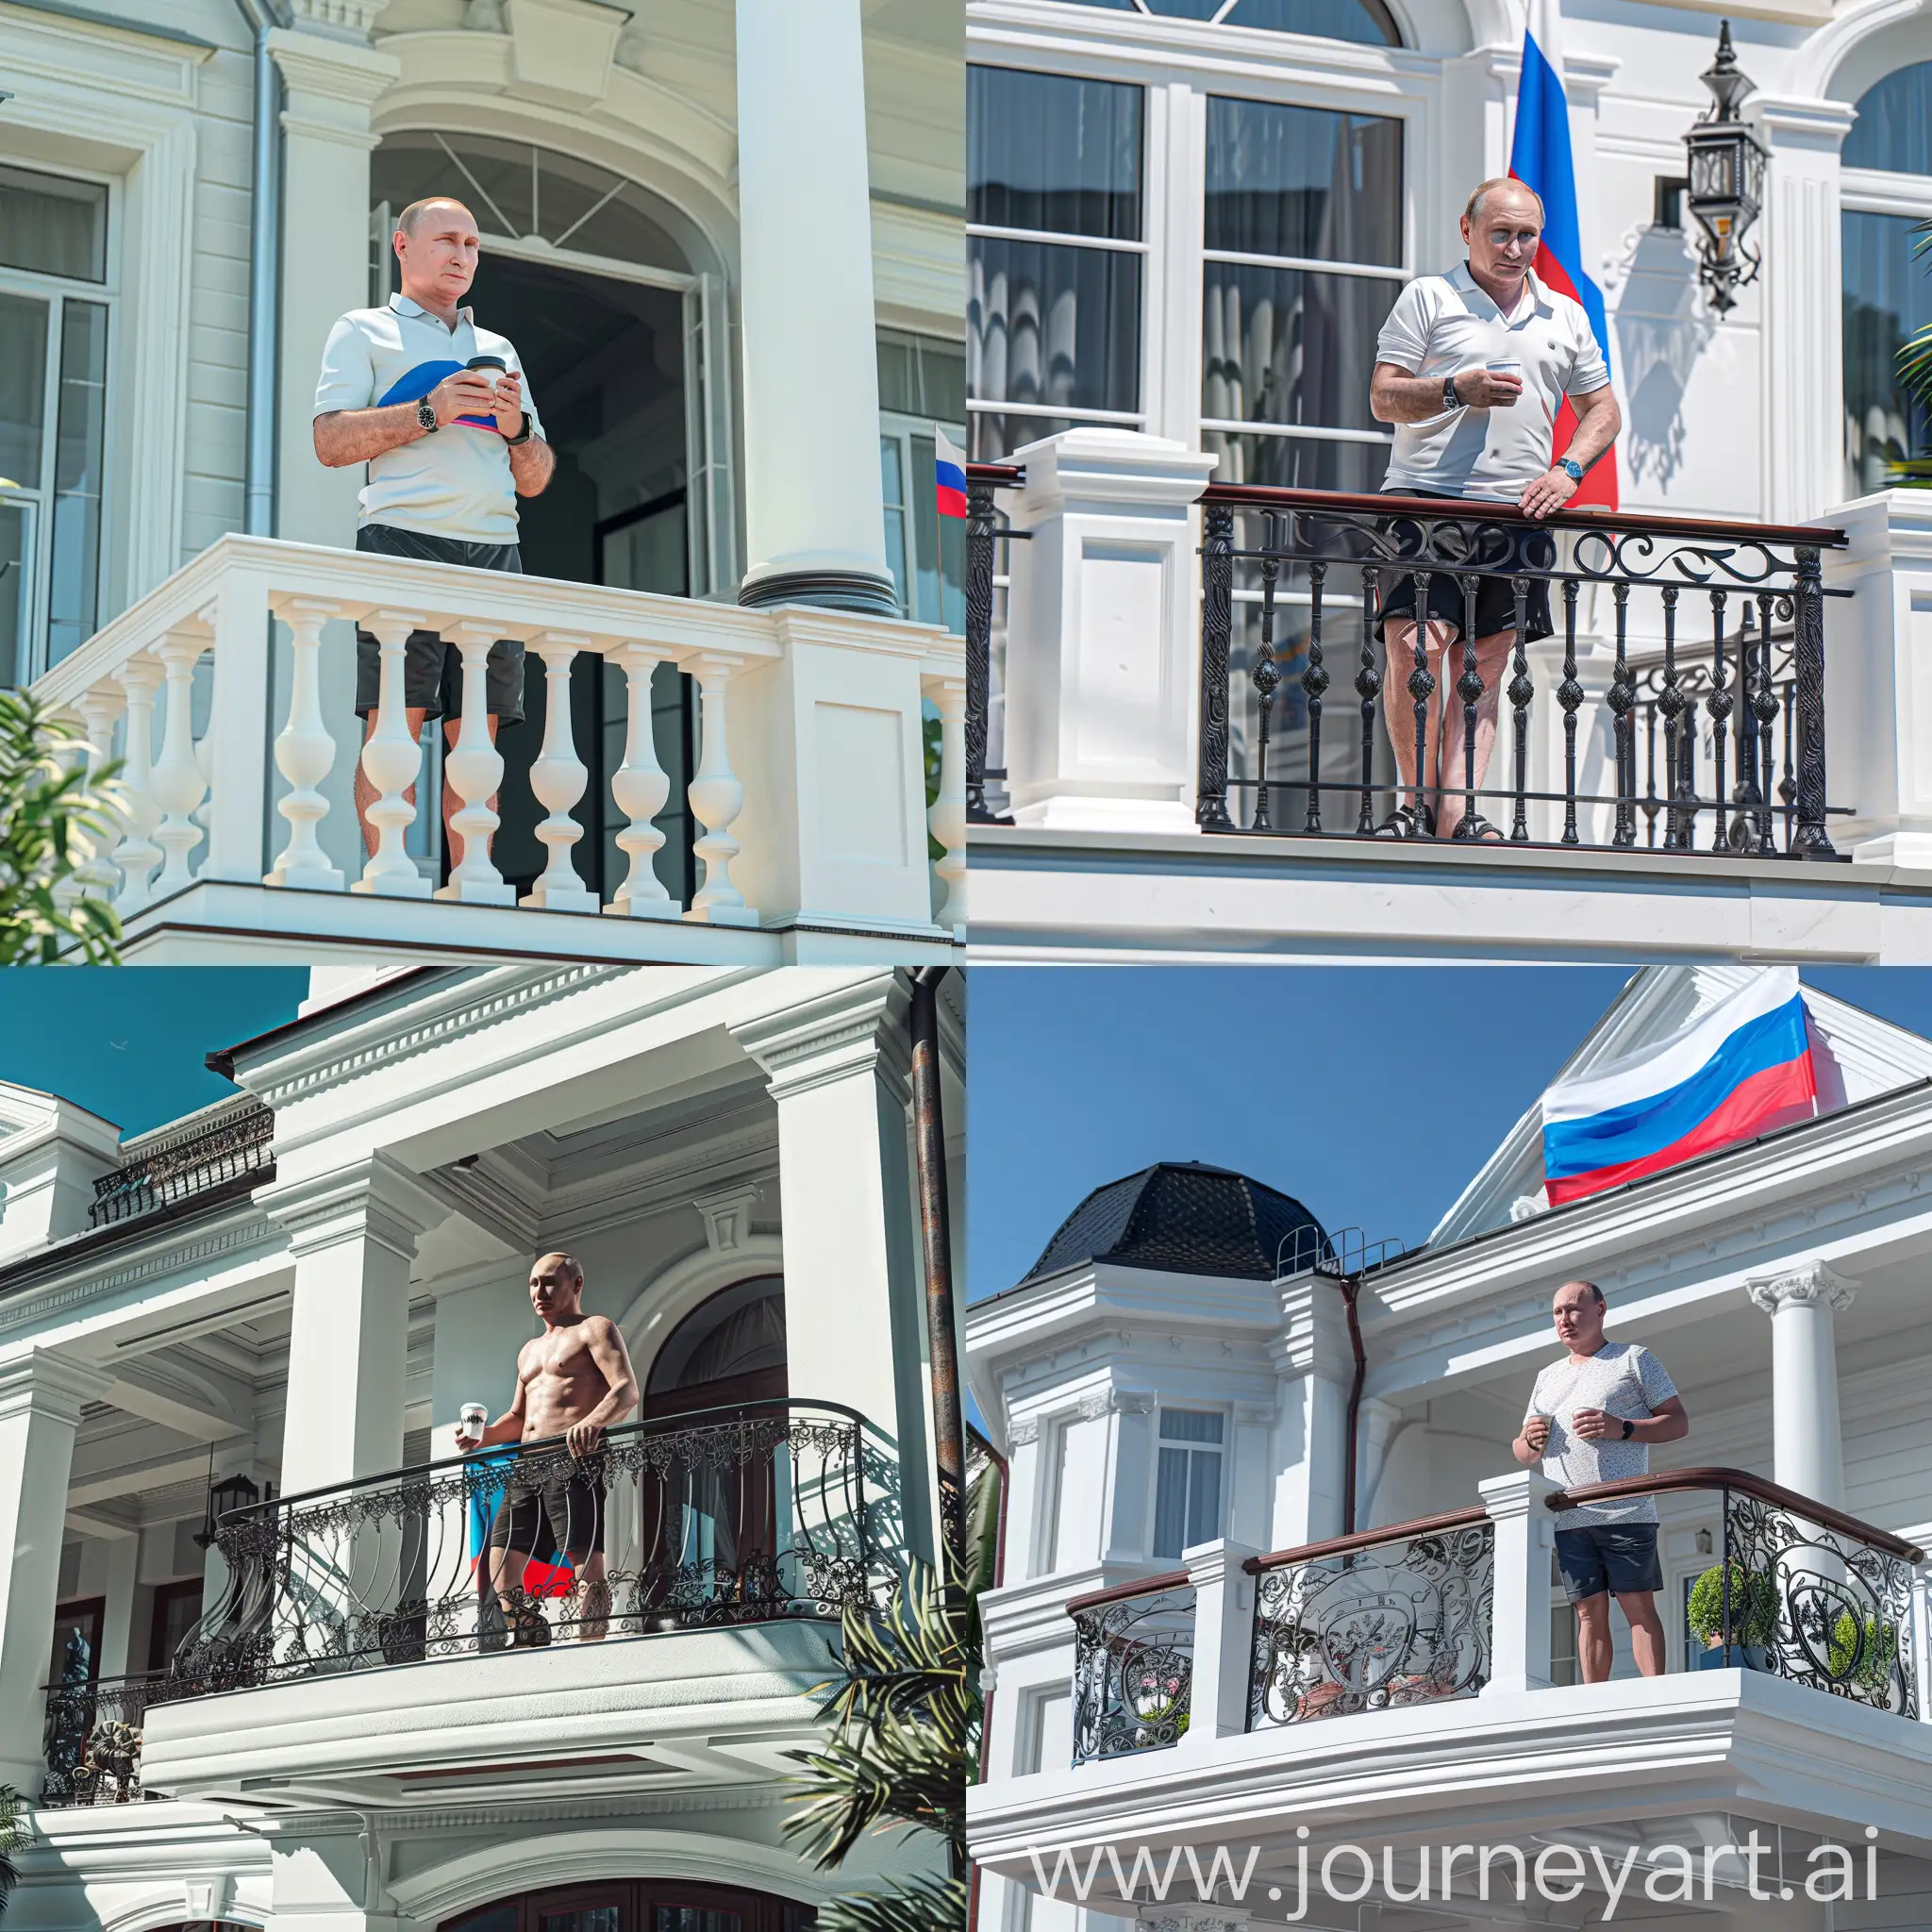 Владимир Путин стоит на балконе своего белого особняка, в шортах, в руках кружка кофе, черные сланцы, 8к, задний фон флаг россии, супер детализация, острый фокус, летнее время года, профессиональное освещение